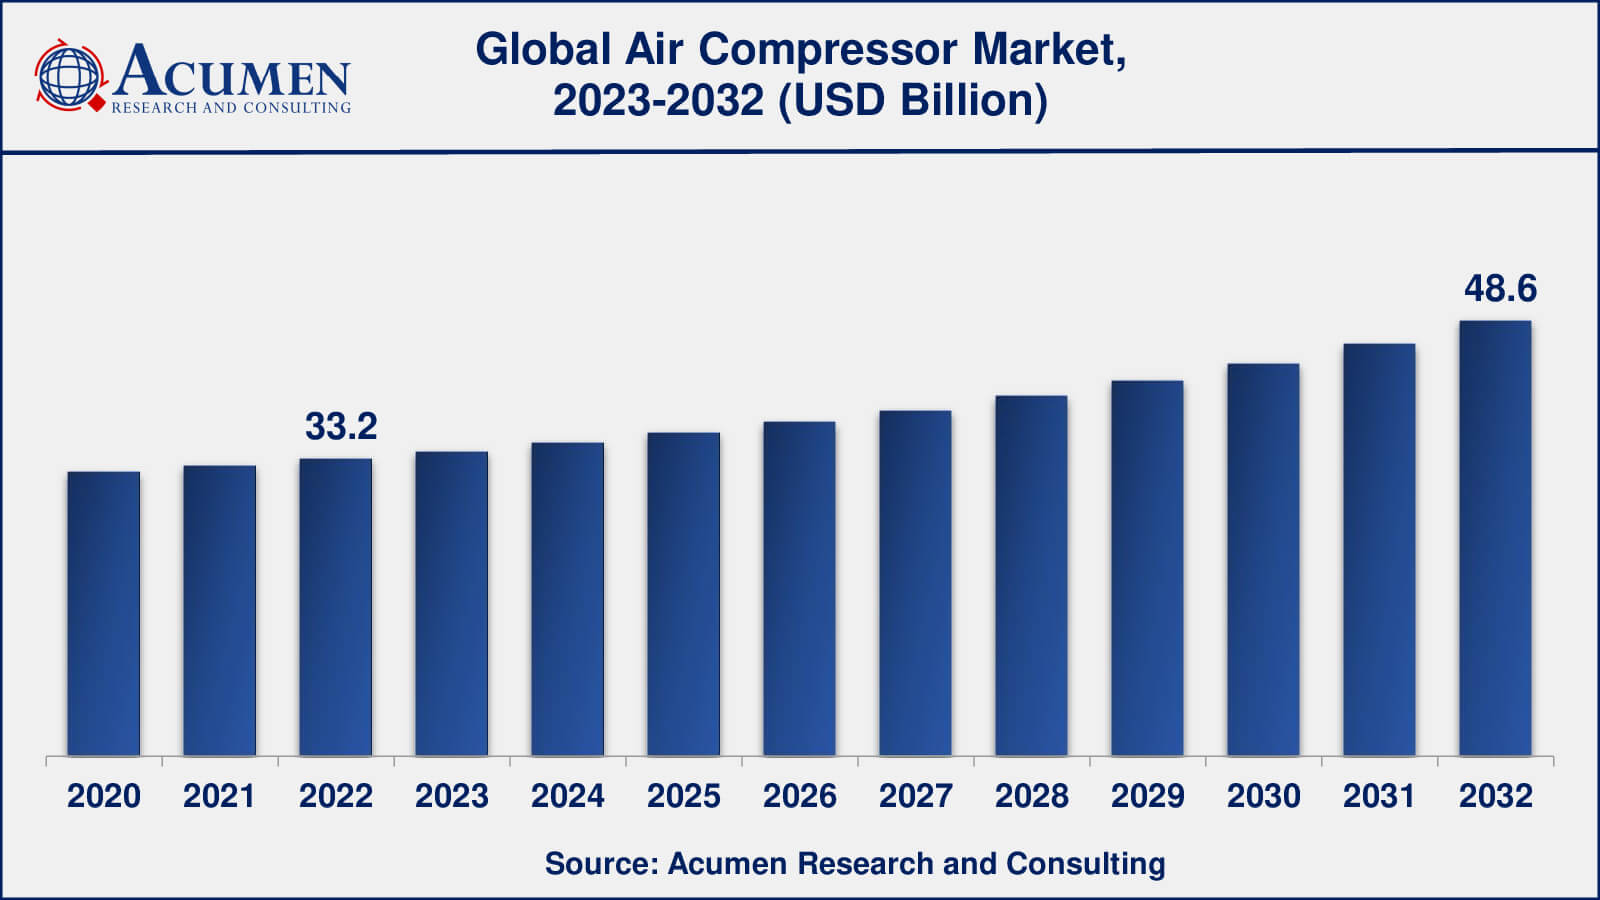 Global Air Compressor Market Dynamics